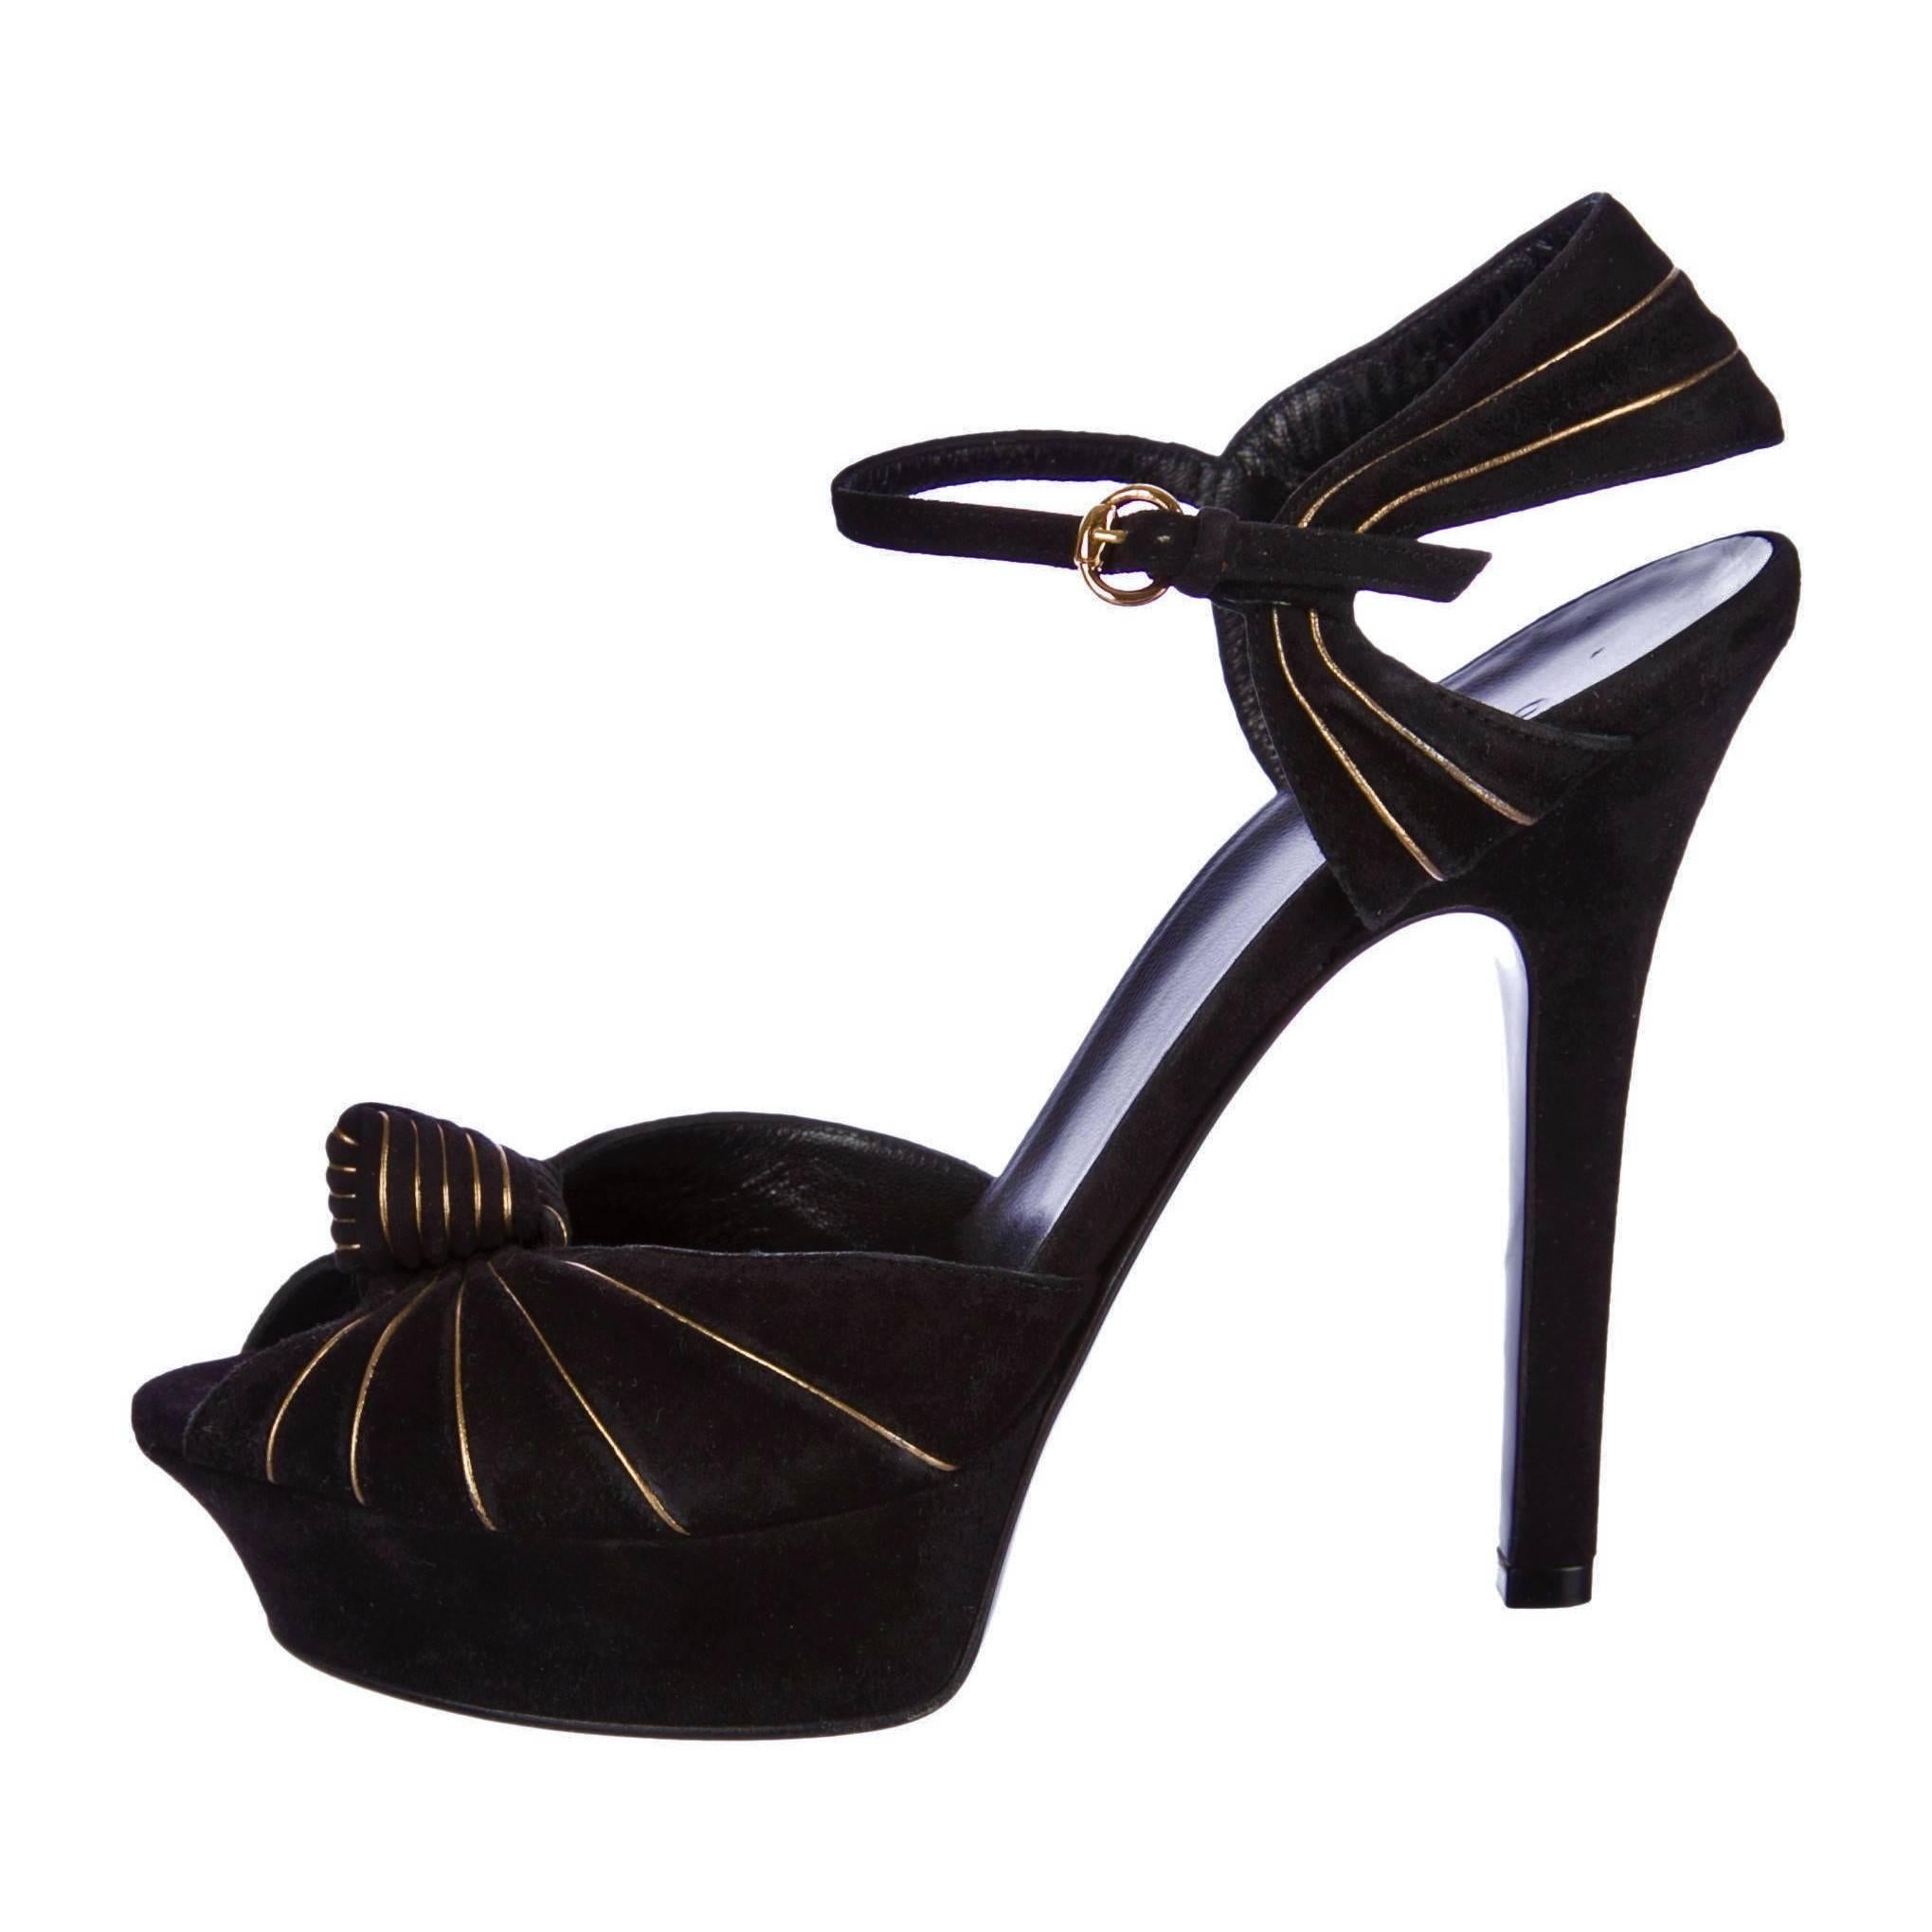 gucci gold platform heels